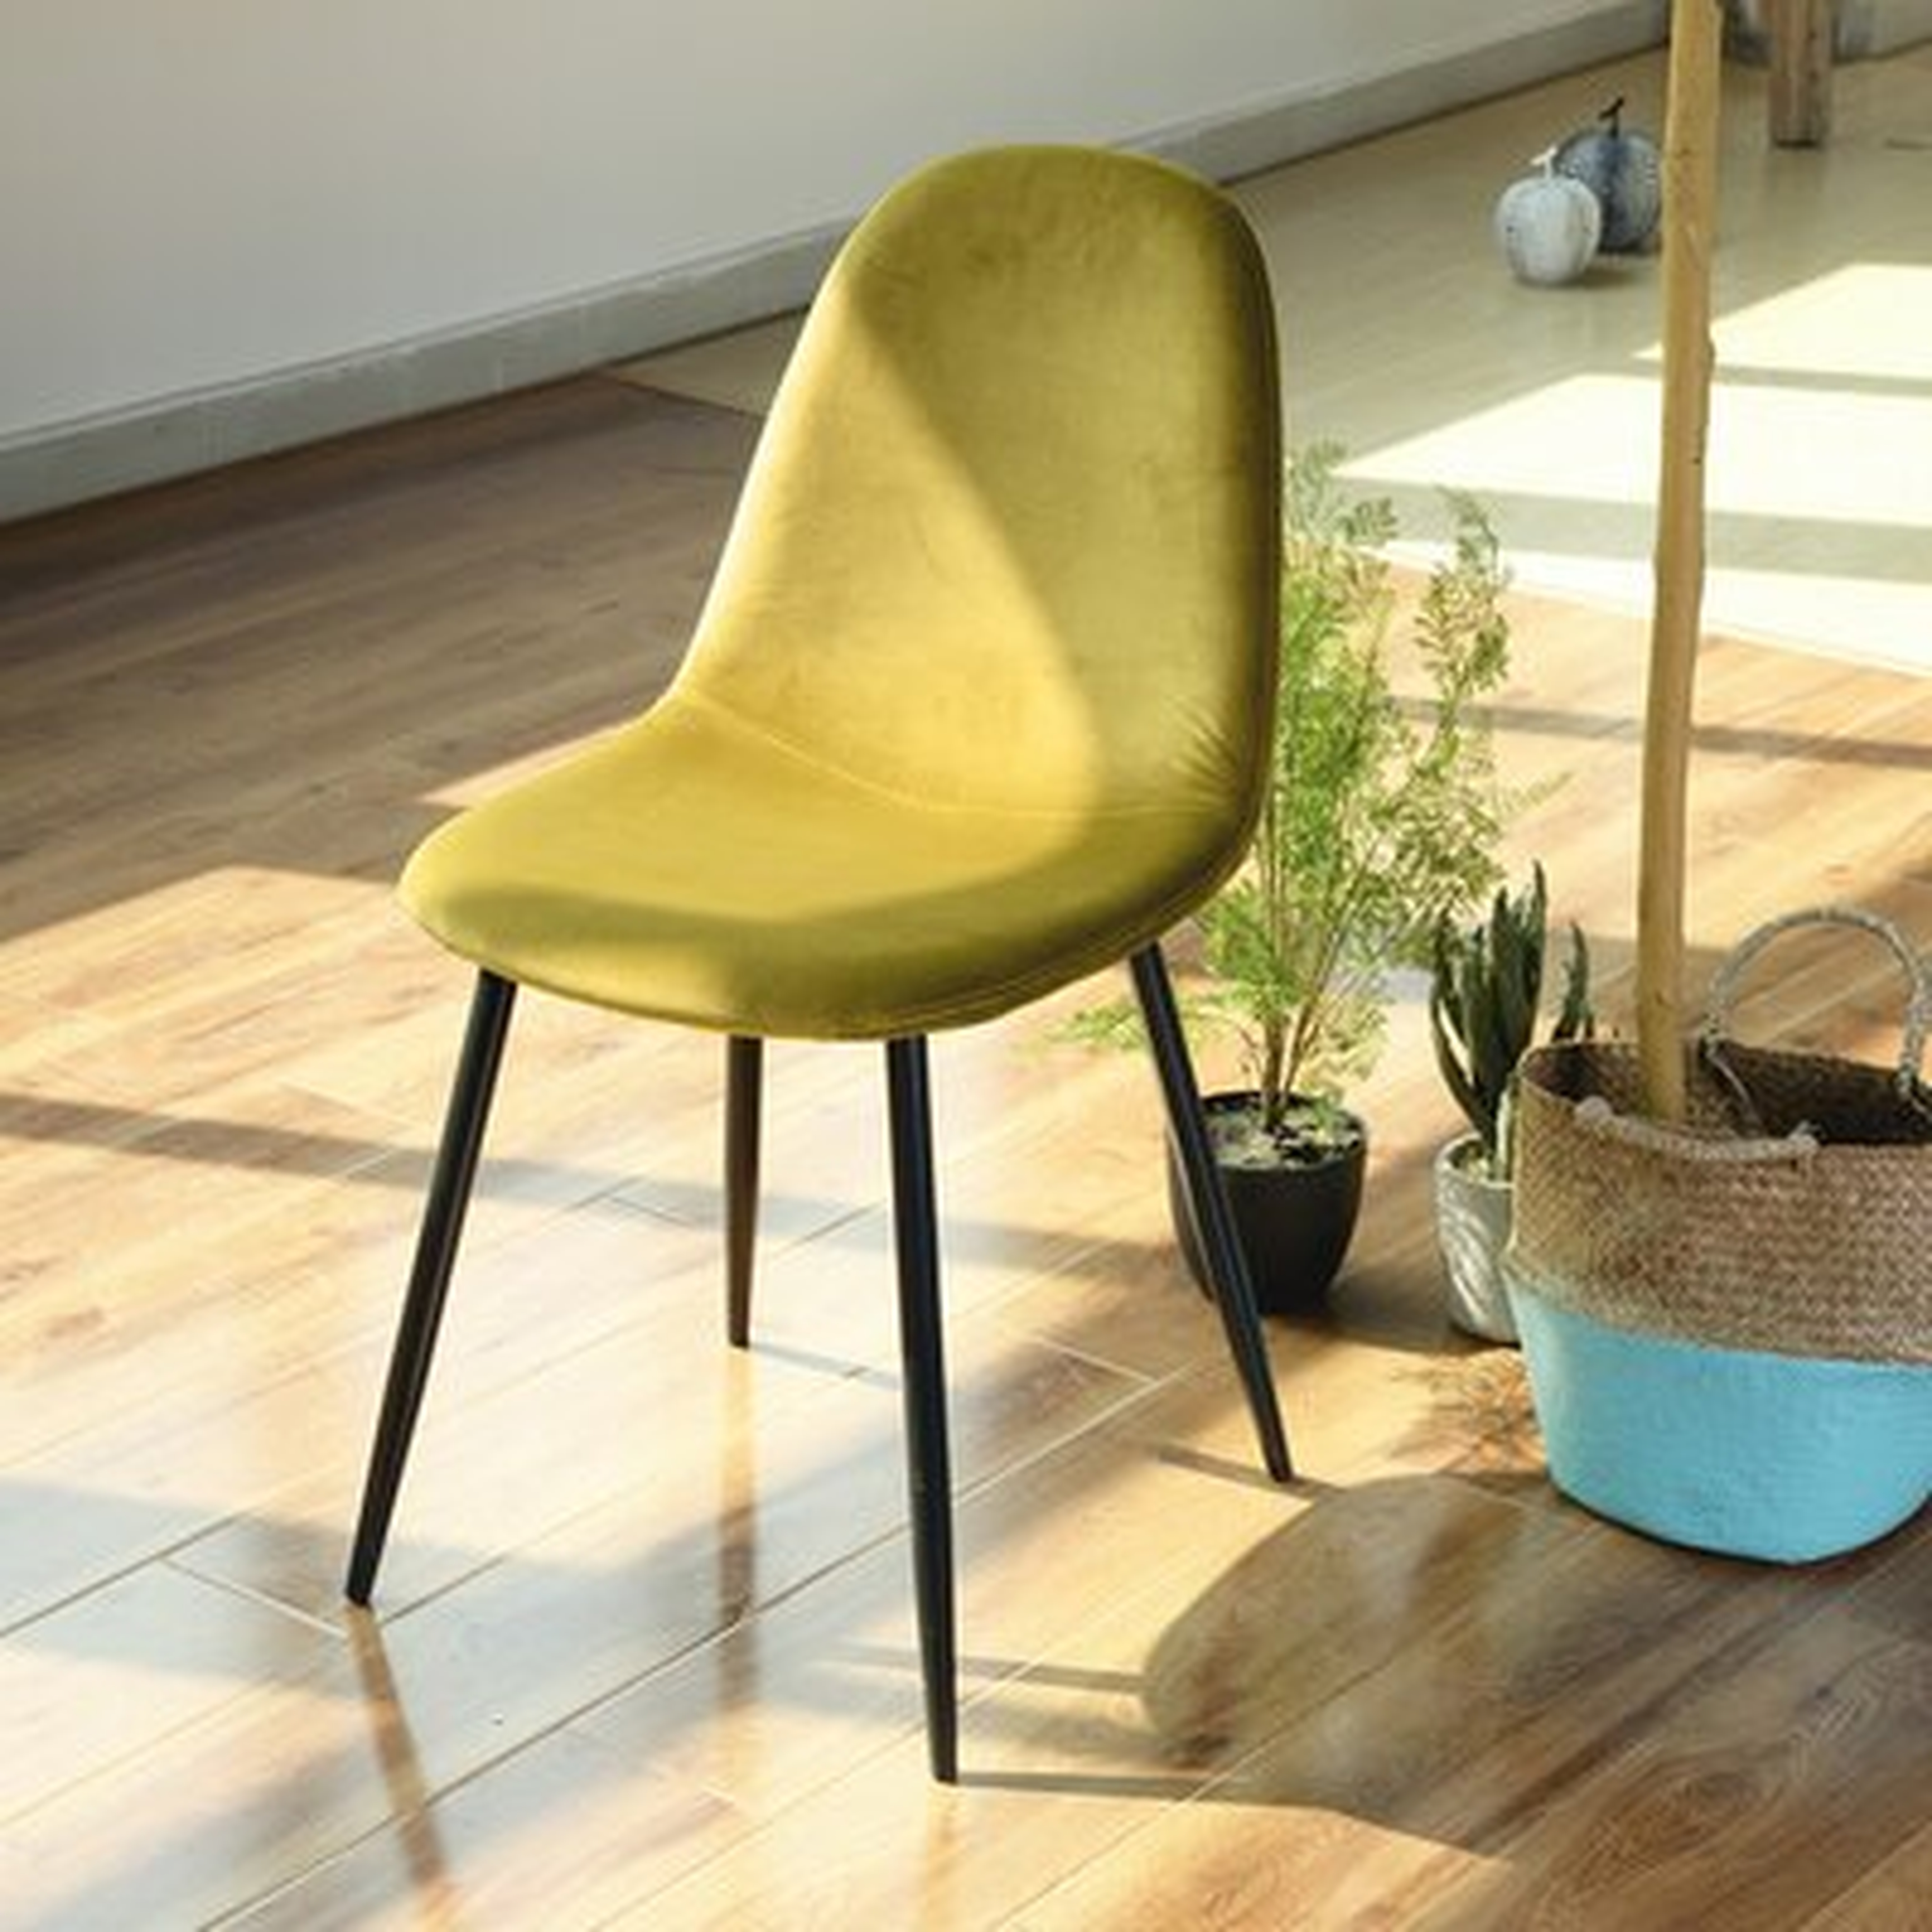 Eckard Fabric Upholstered Side Chair - set of 2 - Wayfair